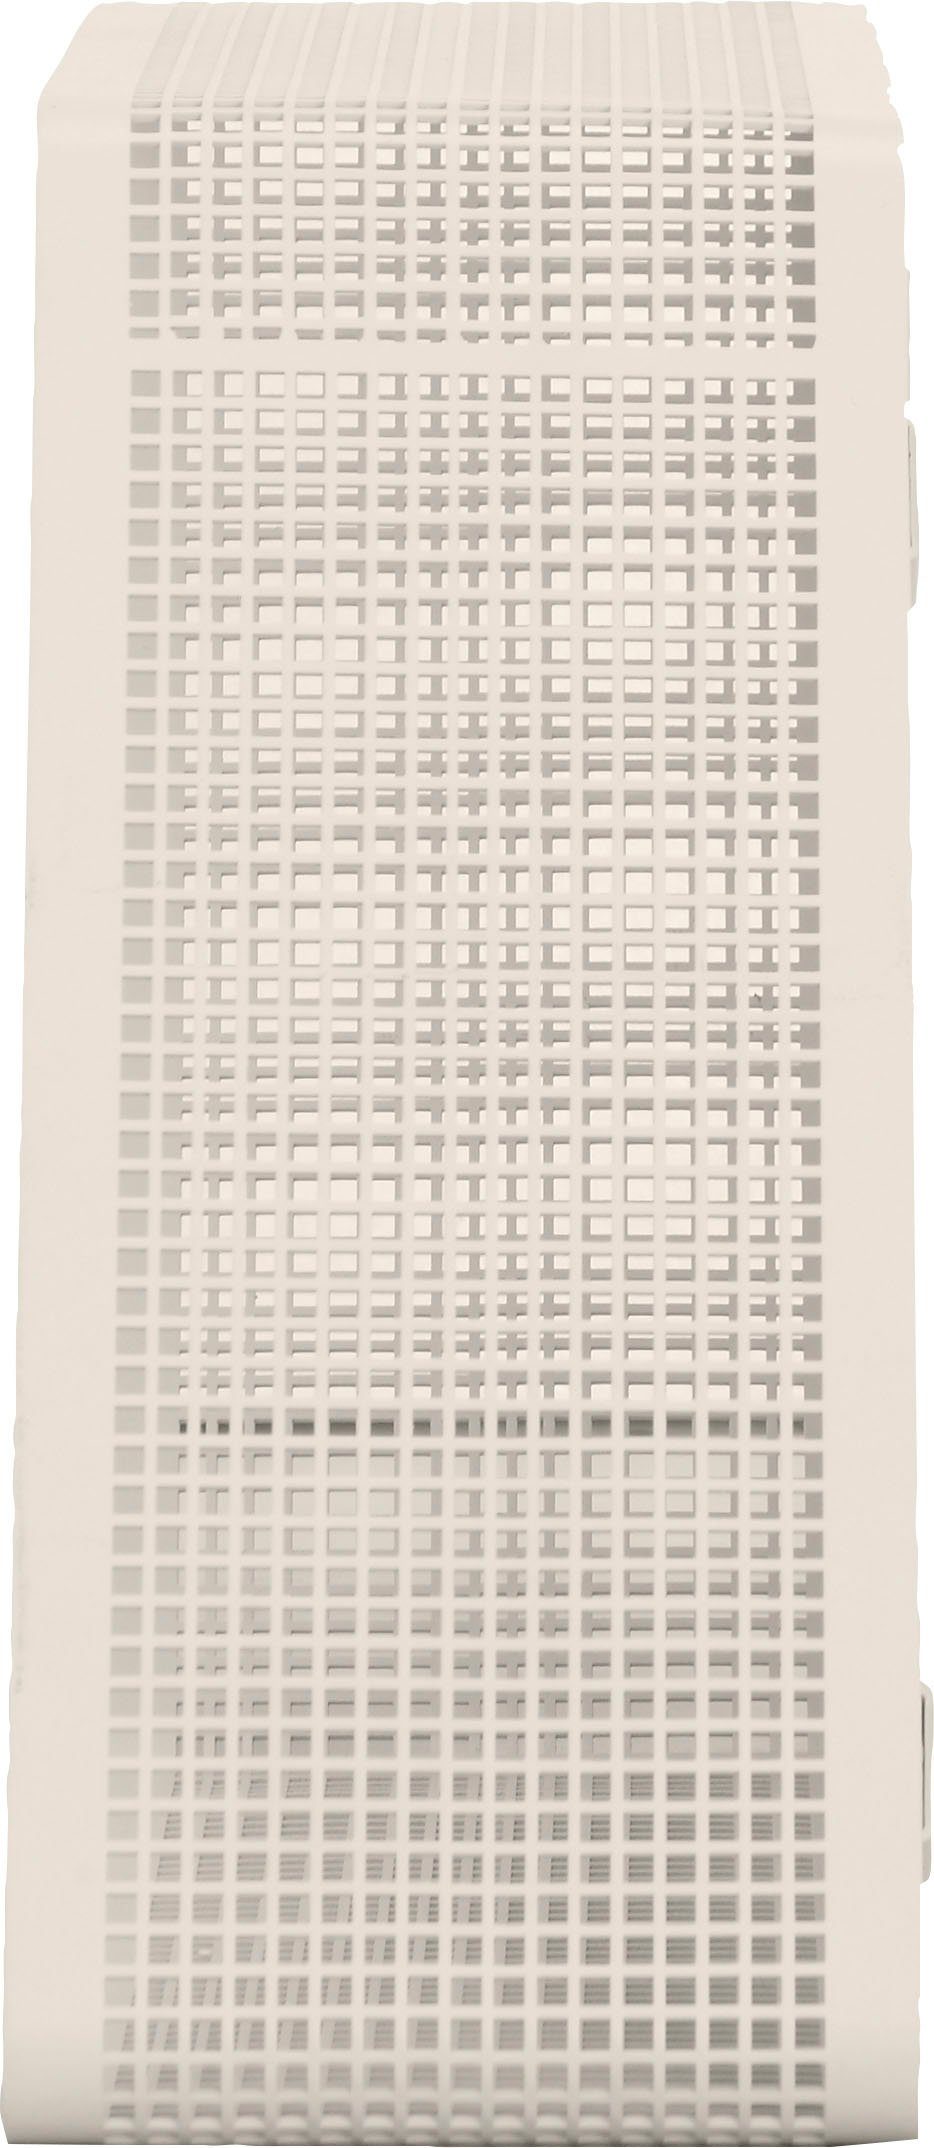 andas Regal Crossby, mit Netzmuster, Breite ca. 56,8 cm, Design by Morten Georgsen cremefarben | Regale